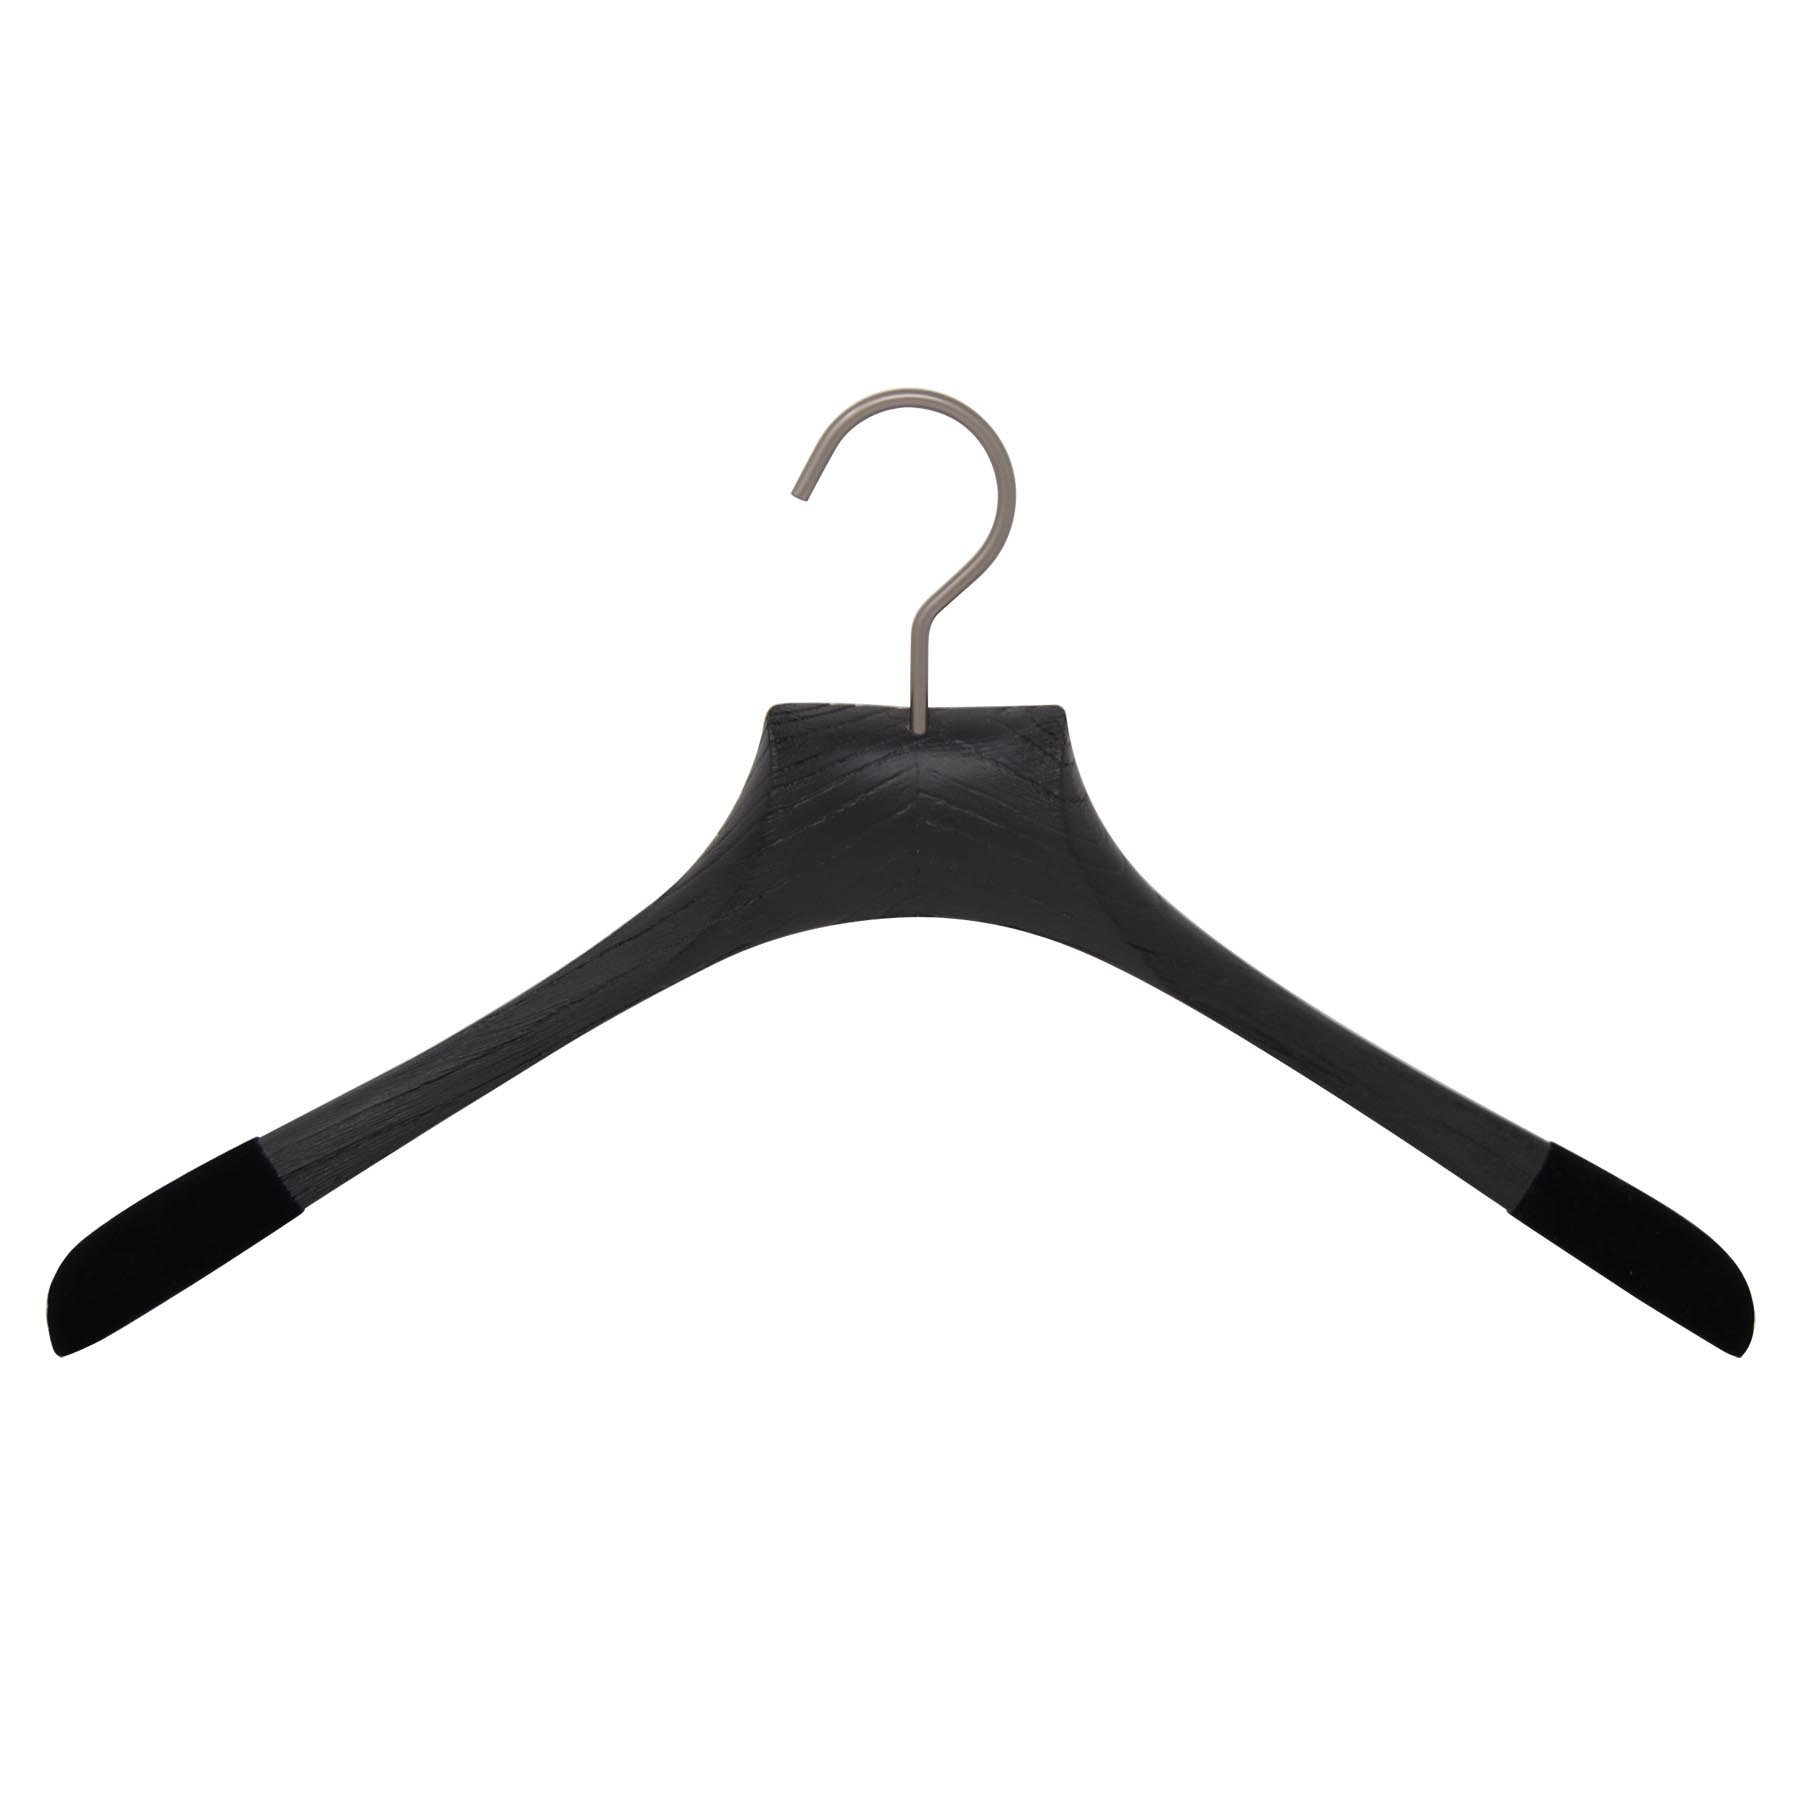 10 вешалок для рубашек из ясеня - матовый черный цвет